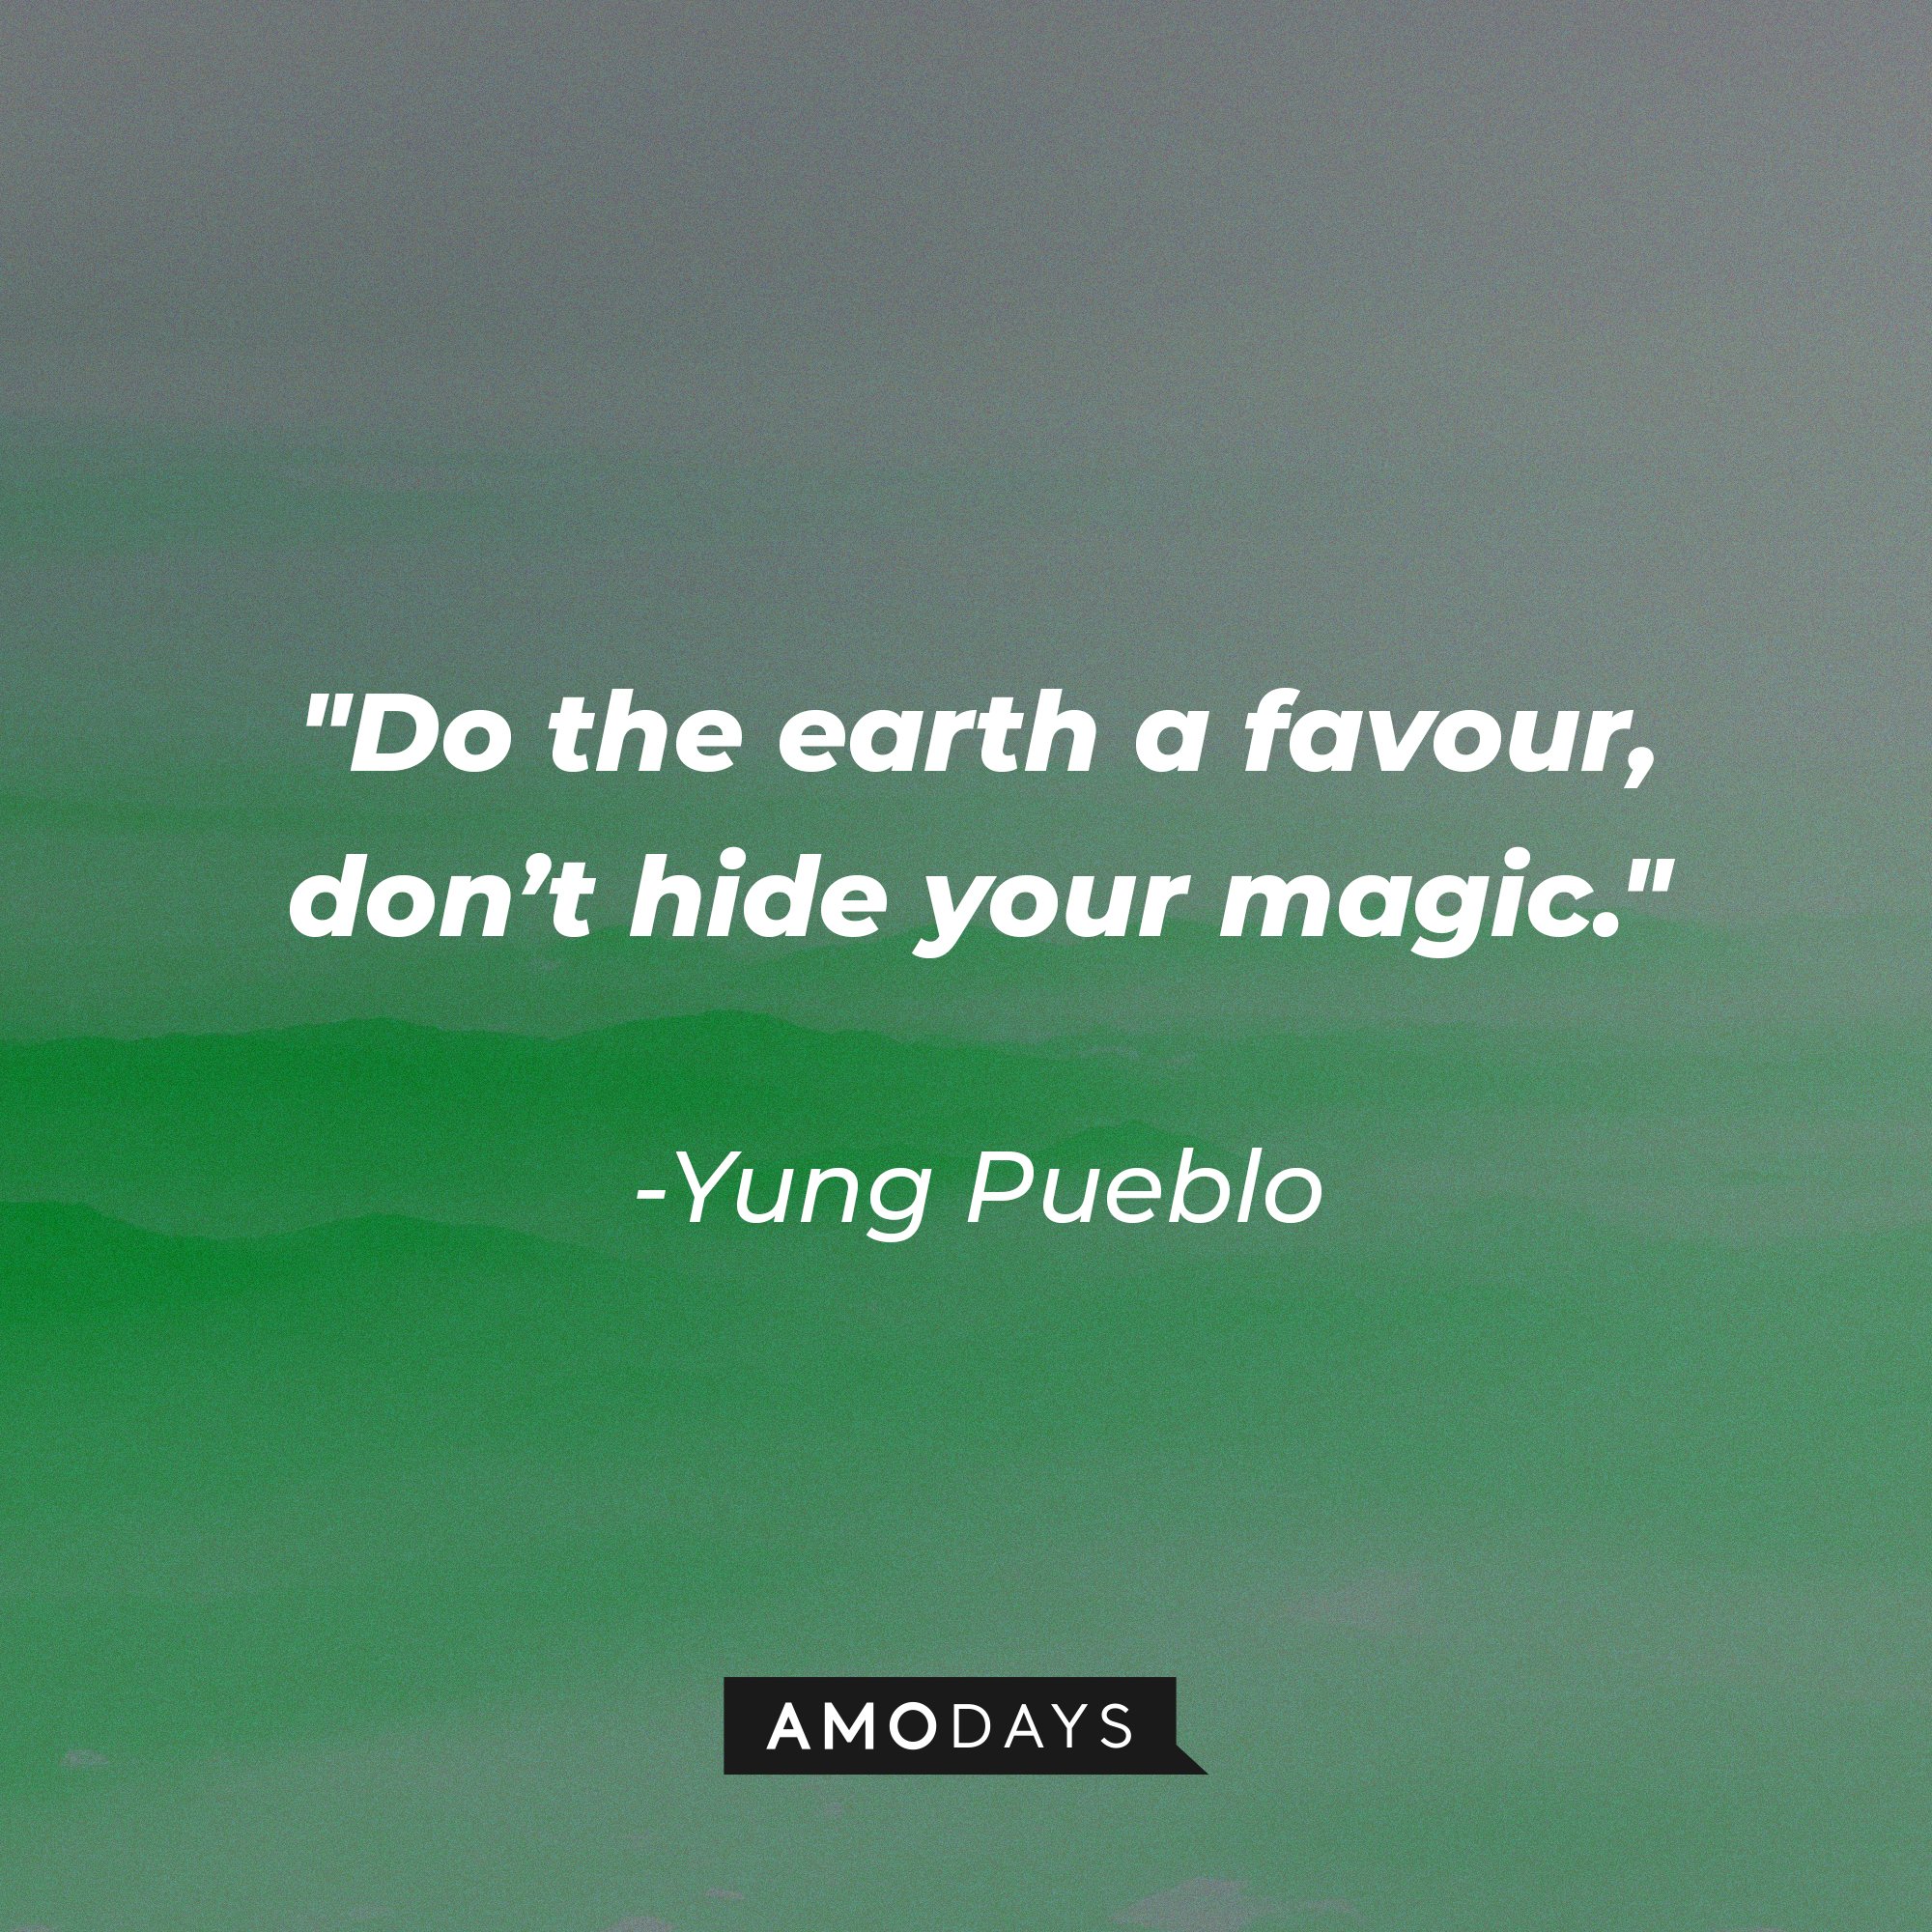 Yung Pueblo's quote "Do the earth a favour, don’t hide your magic." | Source: Unsplash.com